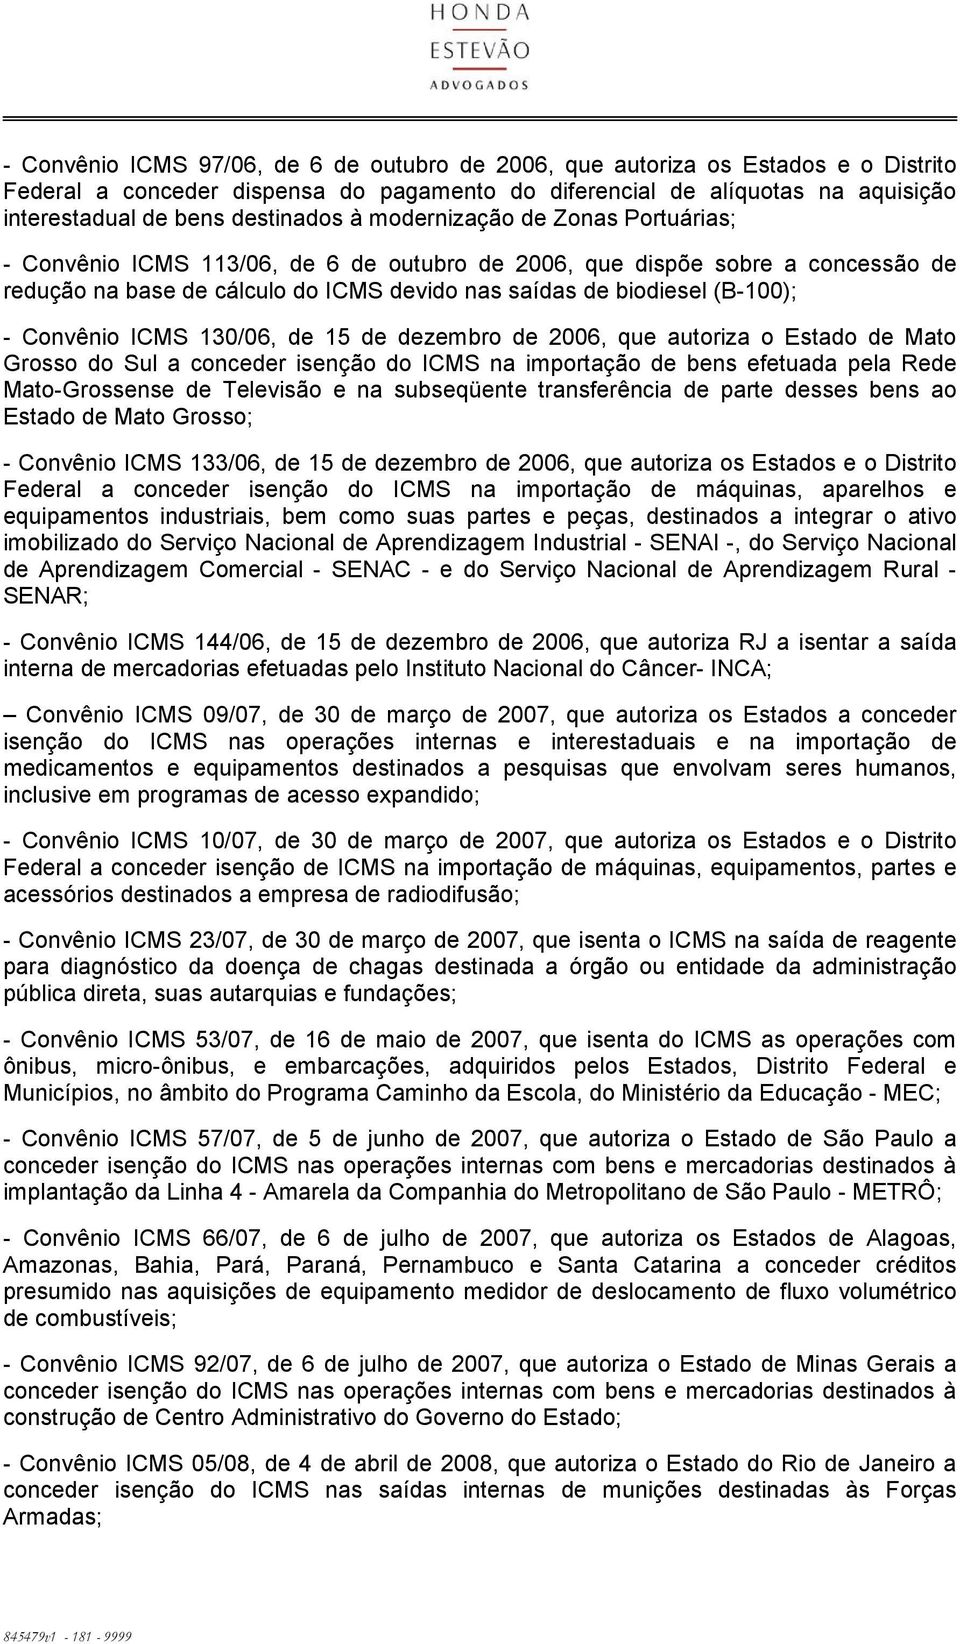 Convênio ICMS 130/06, de 15 de dezembro de 2006, que autoriza o Estado de Mato Grosso do Sul a conceder isenção do ICMS na importação de bens efetuada pela Rede Mato-Grossense de Televisão e na